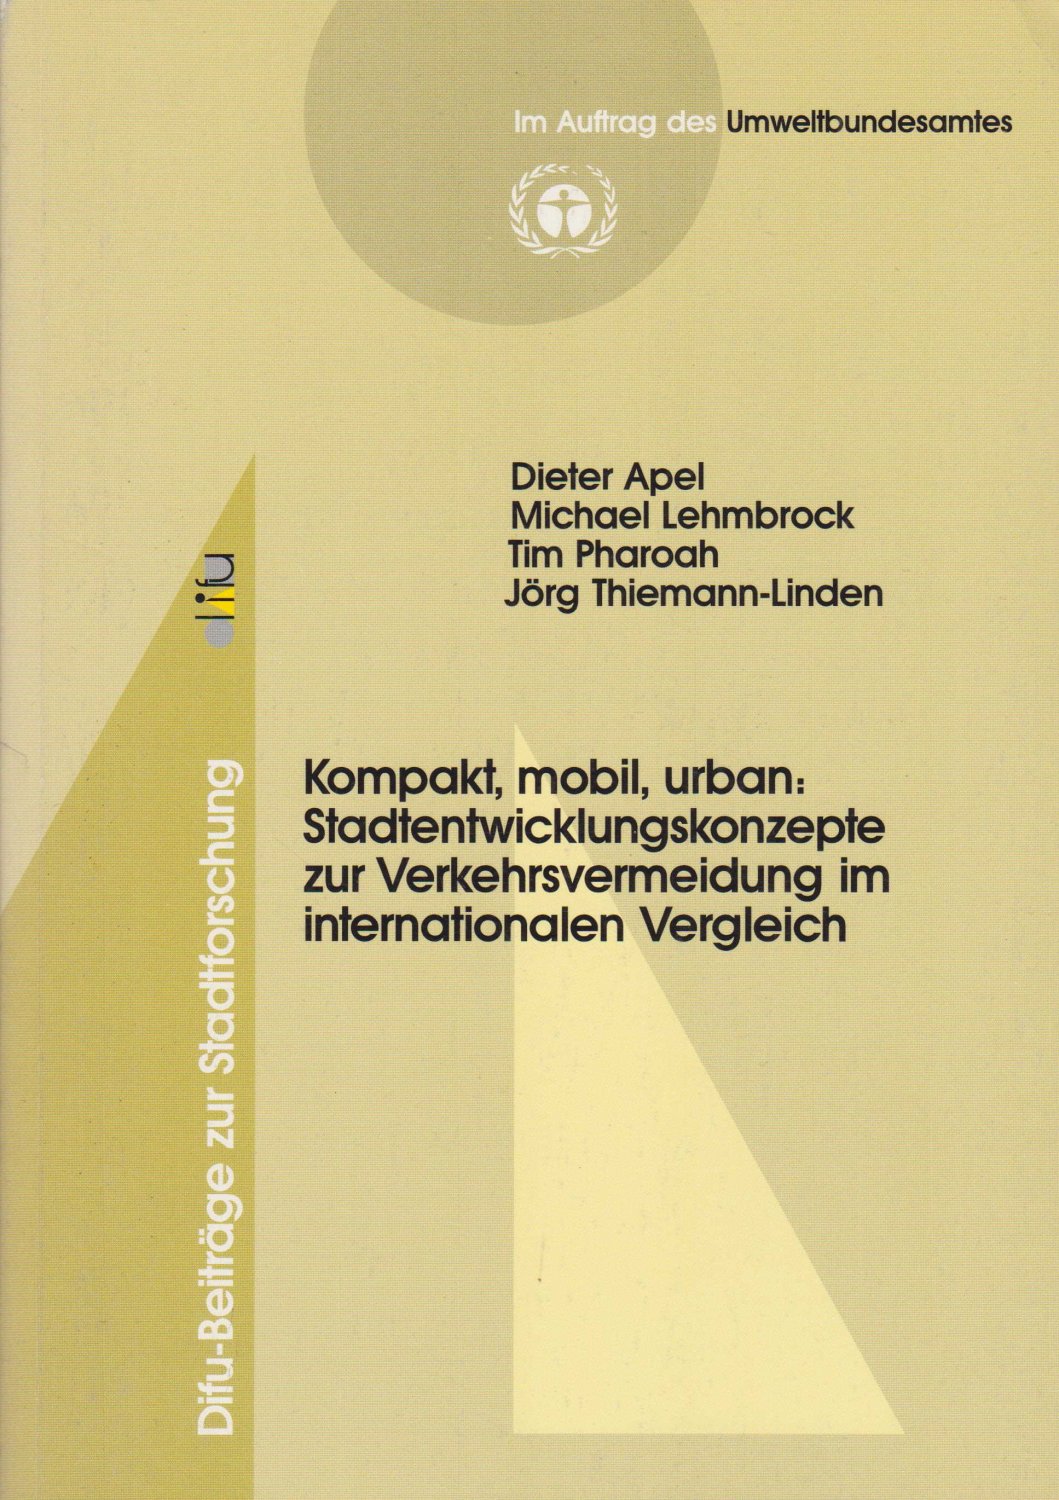 APEL, Dieter / Michael LEHMBROCK / Tim PHAROAH / Jörg THIEMANN-LINDEN:  Kompakt, mobil, urban: Stadtentwicklungskonzepte zur Verkehrsvermeidung im internationalen Vergleich. 